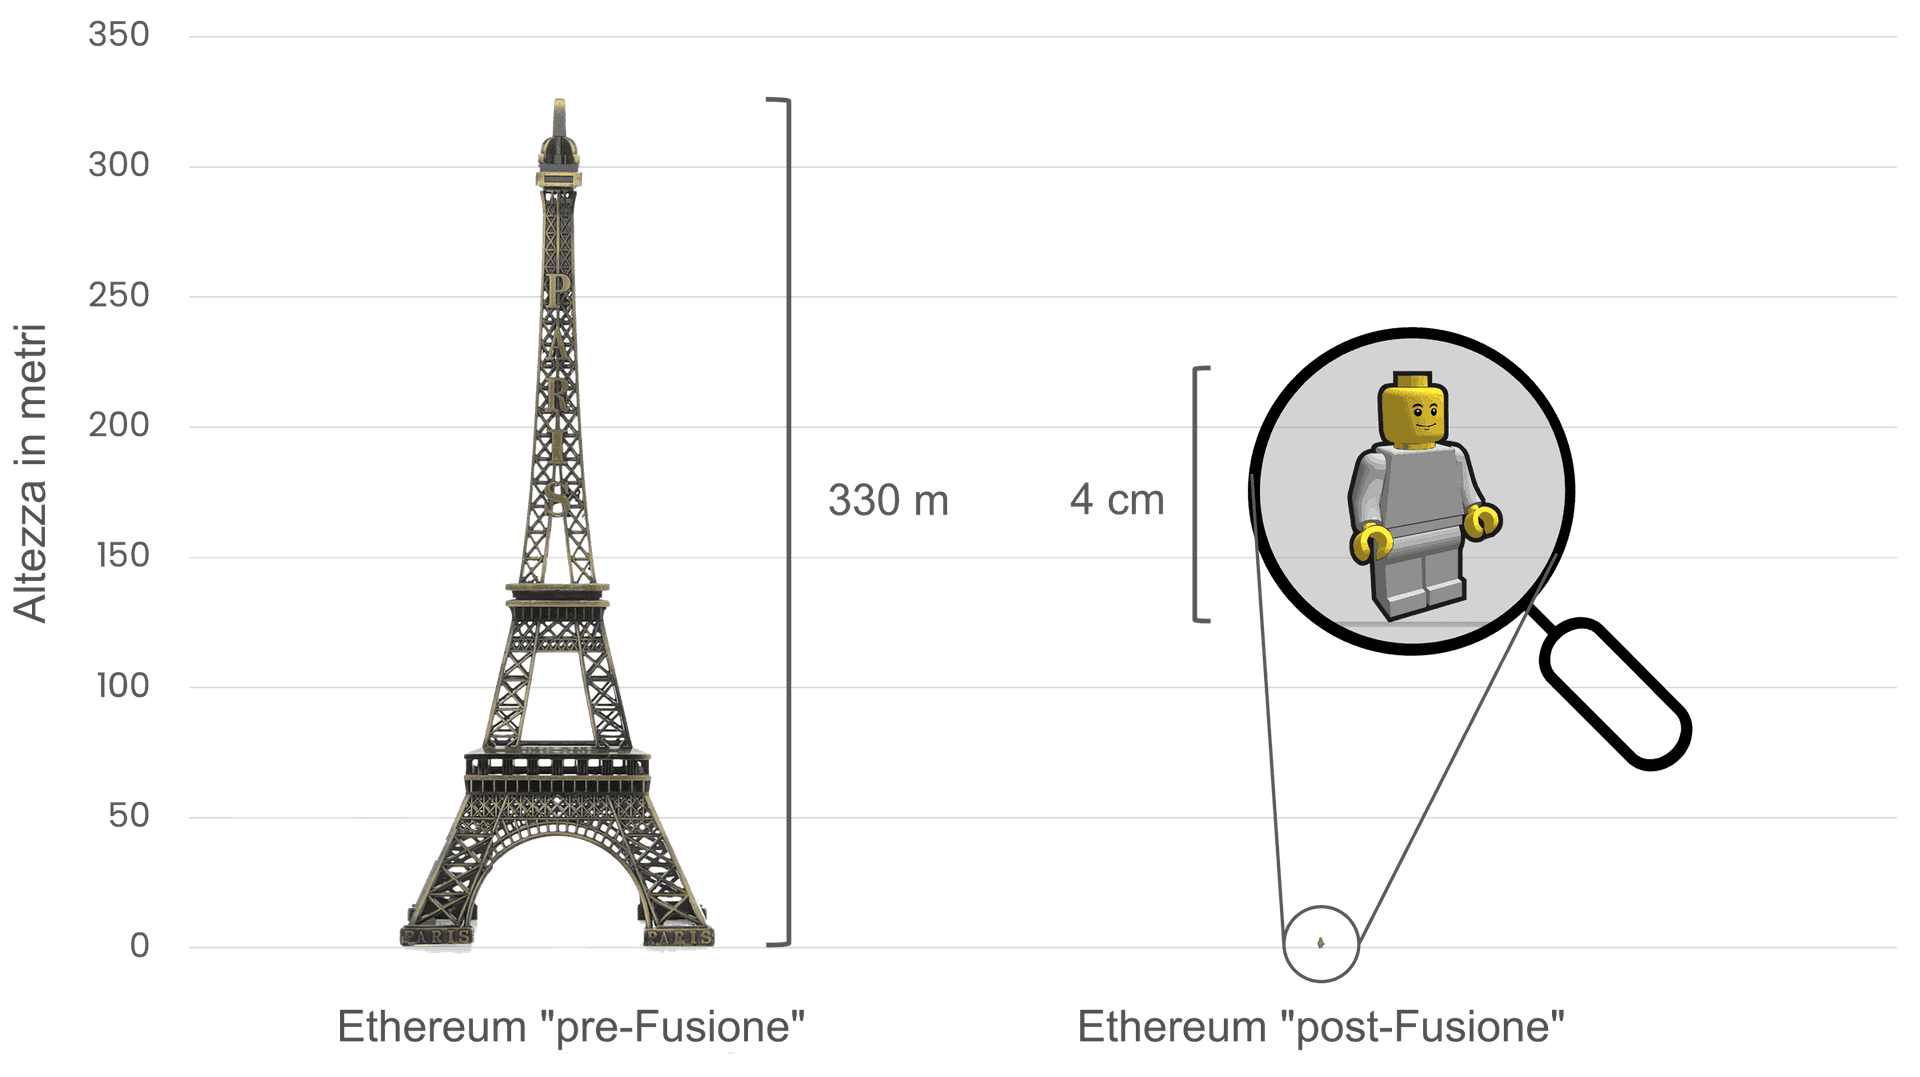 Confronto tra il consumo energetico di Ethereum prima della Fusione e dopo, utilizzando la Torre Eiffel (alta 330 metri) sulla sinistra per simbolizzare il consumo energetico prima della Fusione e un piccolo personaggio Lego di 4 cm sulla destra per rappresentare la drastica riduzione del consumo energetico dopo di essa